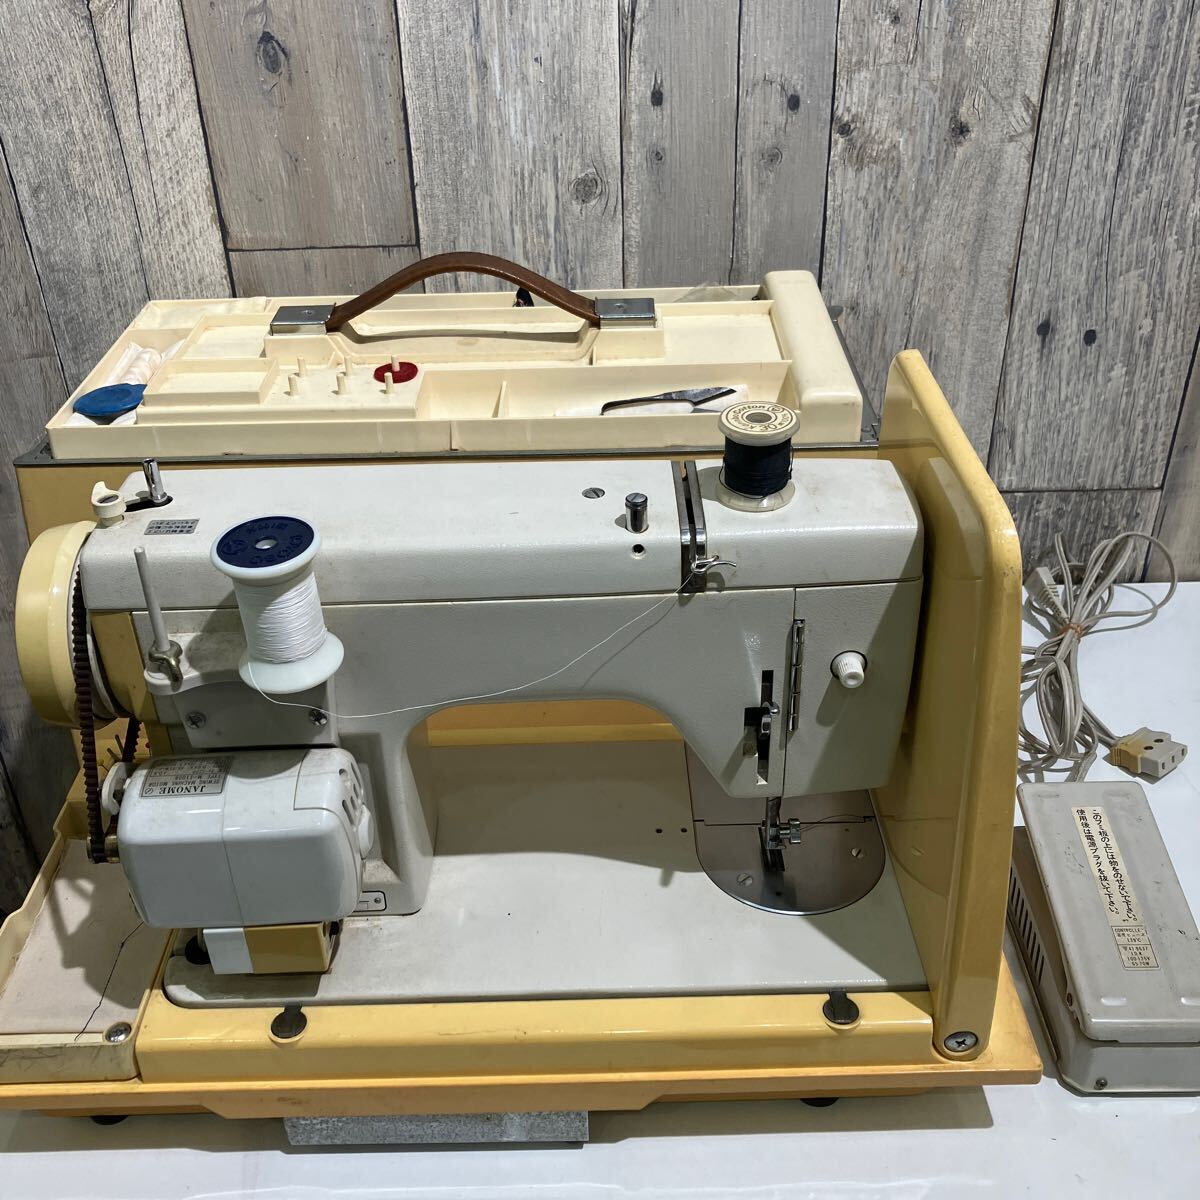 JANOME швейная машина M-11008 работа товар ( электризация рабочее состояние подтверждено ) Vintage 